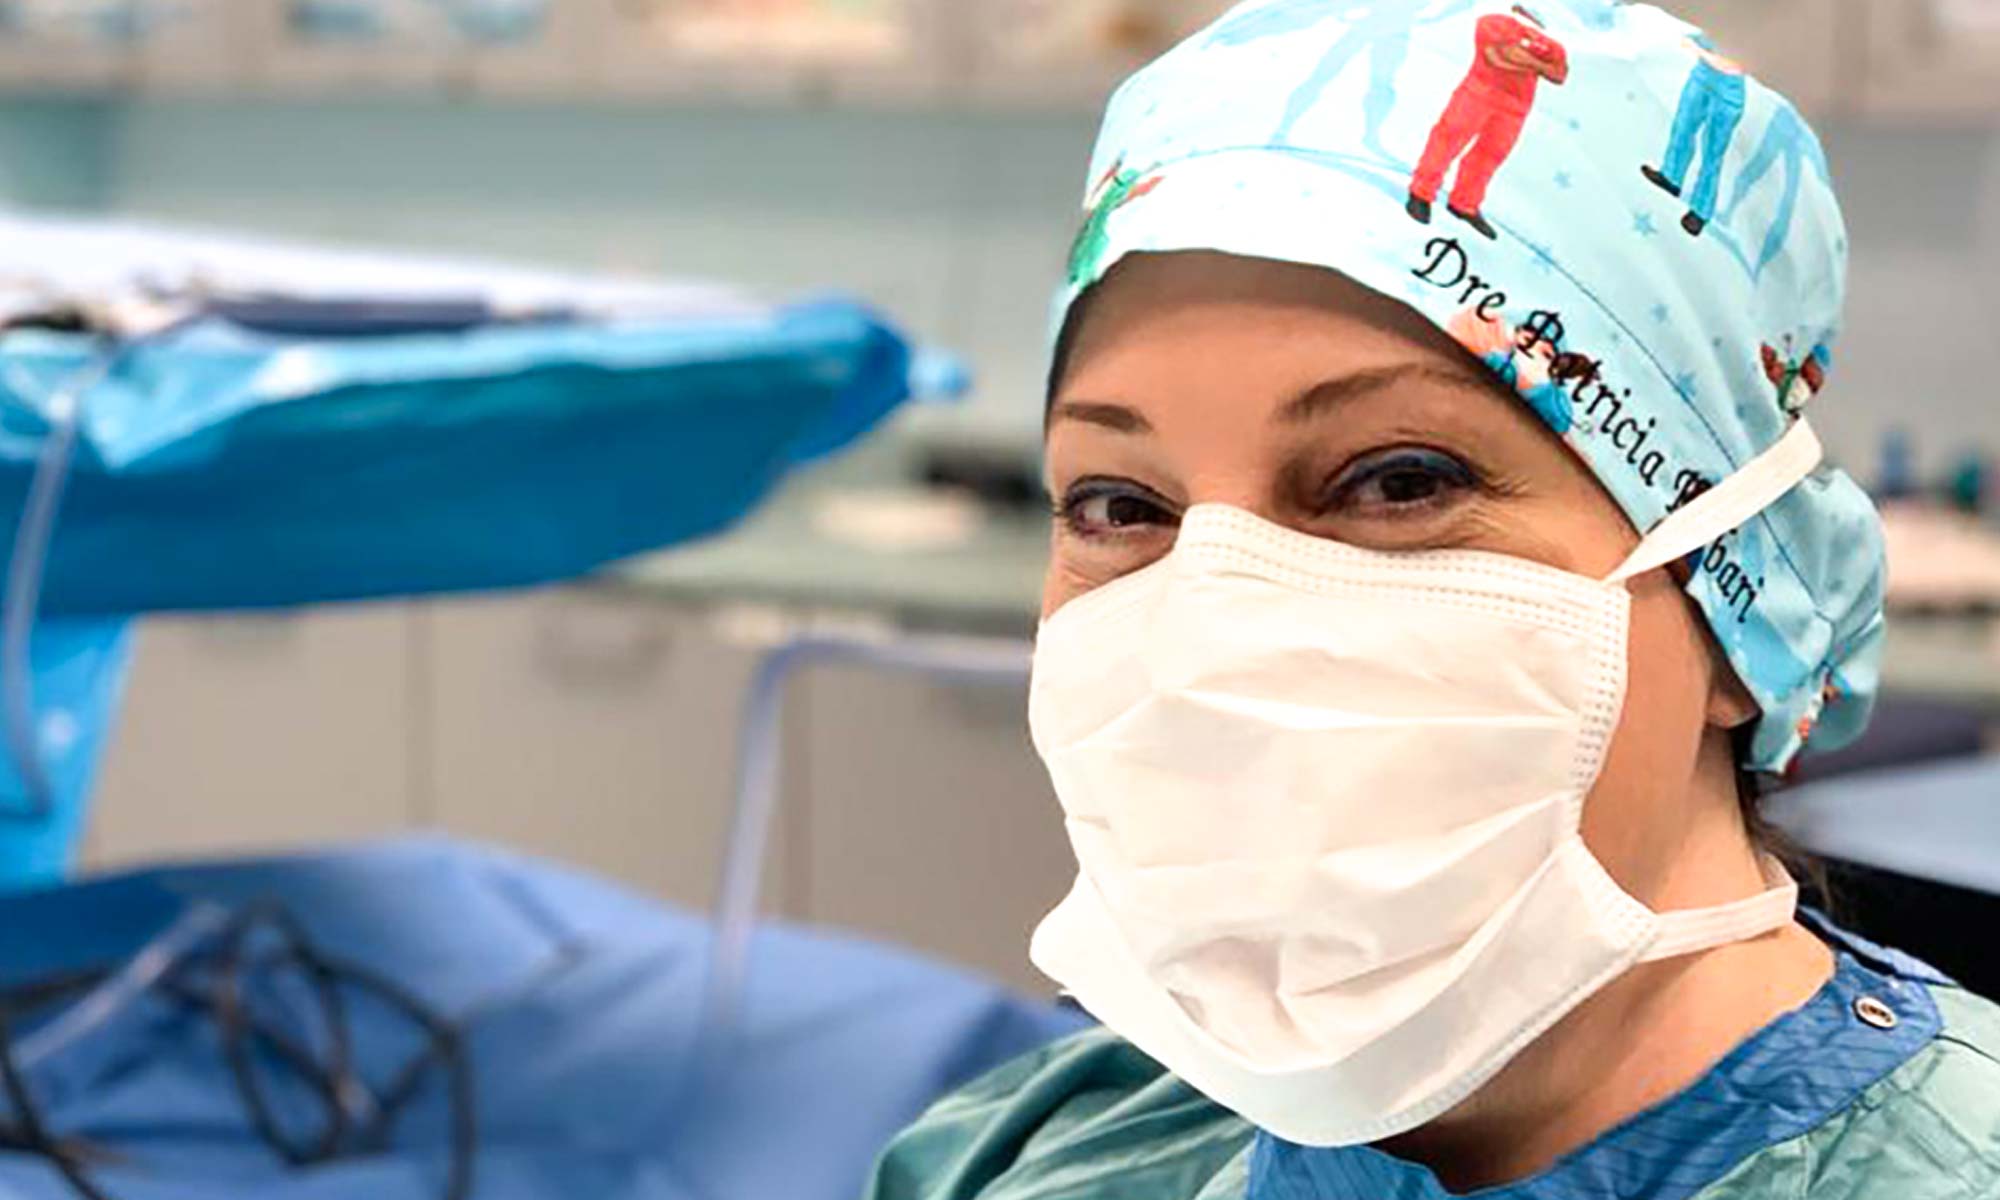 Dr. Berbari in scrubs performing procedure